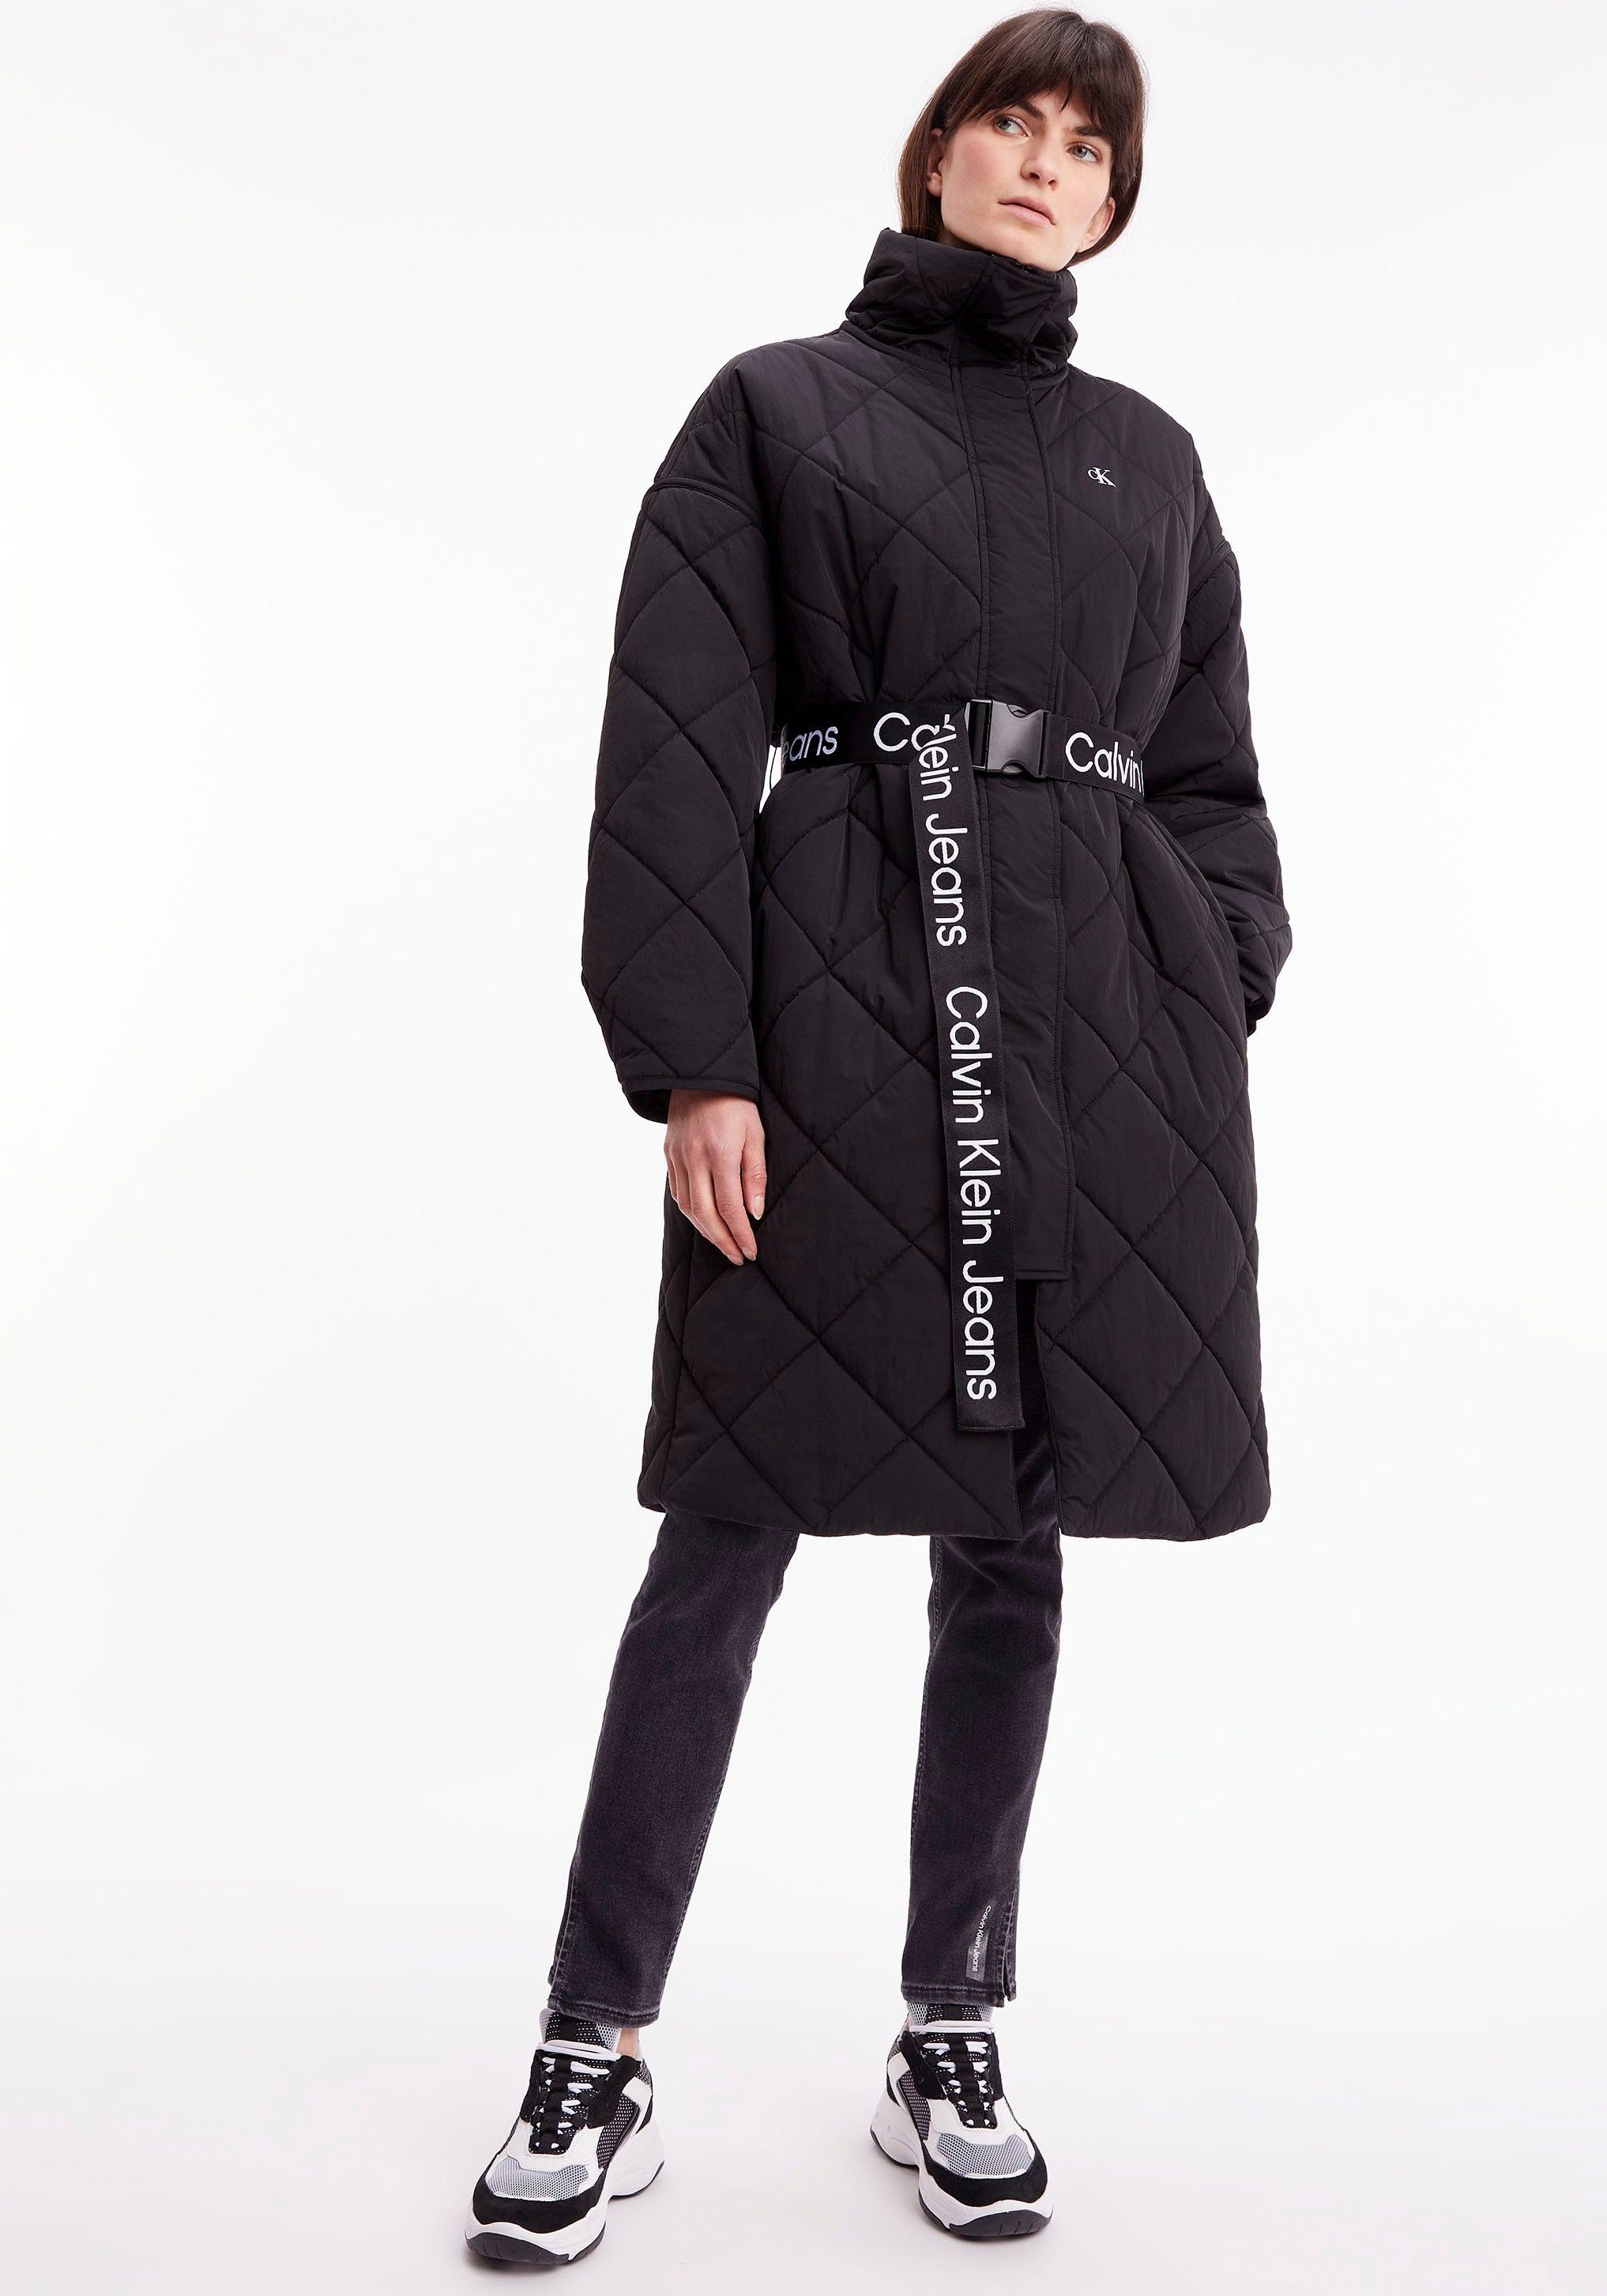 Günstige Calvin Klein Wintermäntel für Damen kaufen | OTTO